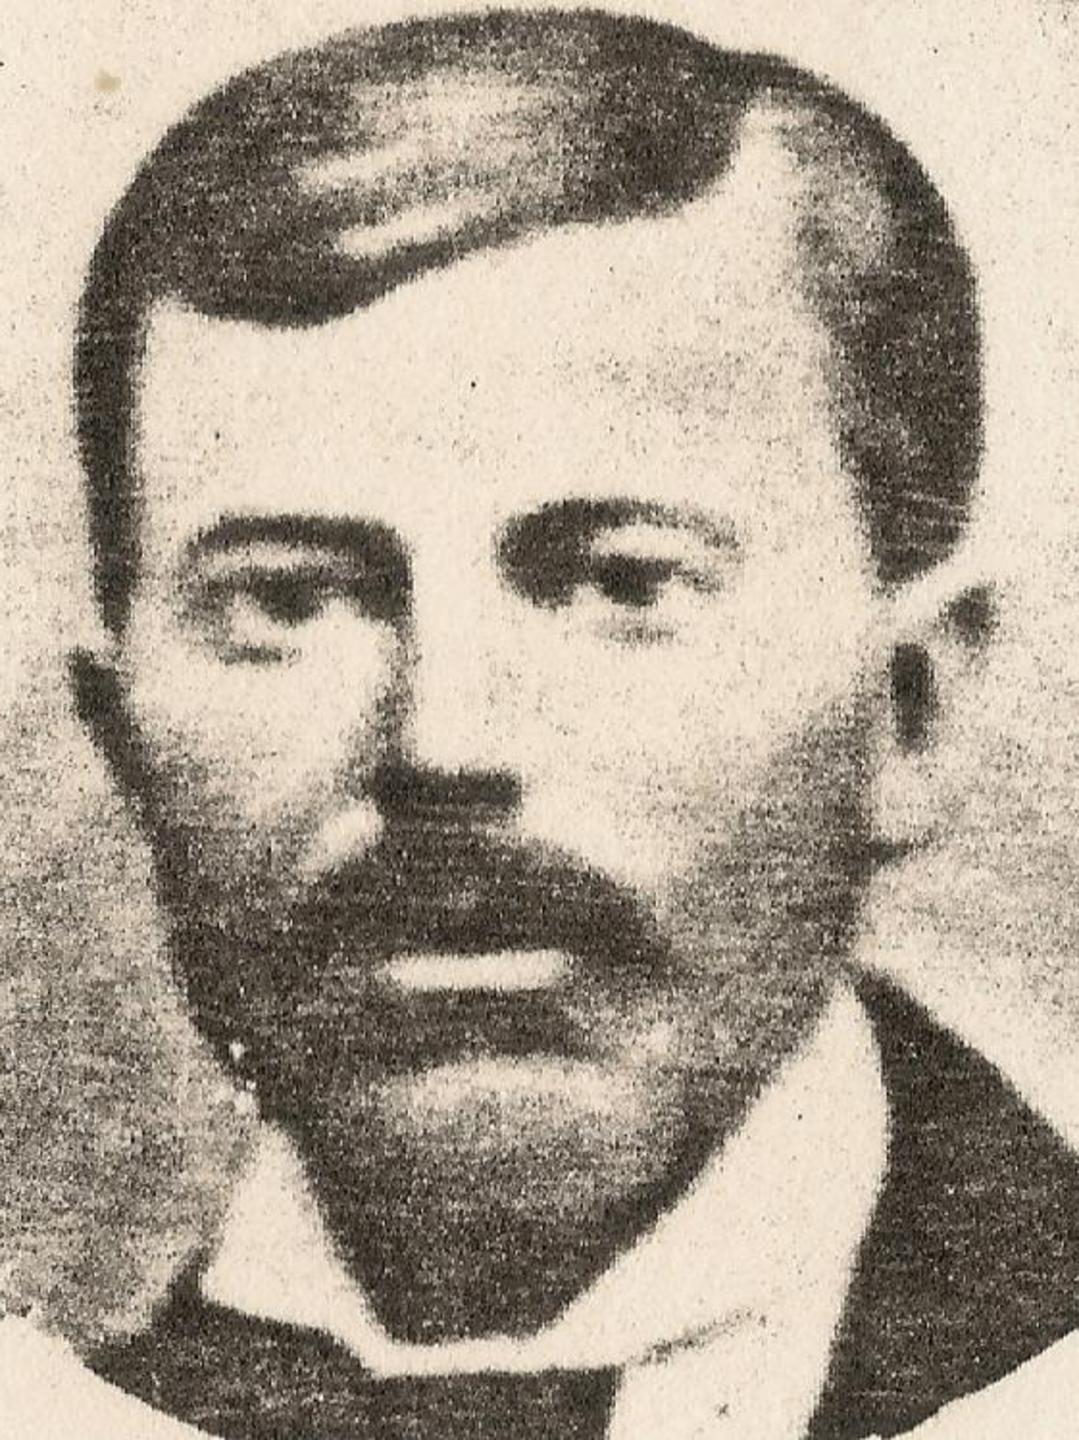 Paul Hogan (1846 - 1882) Profile